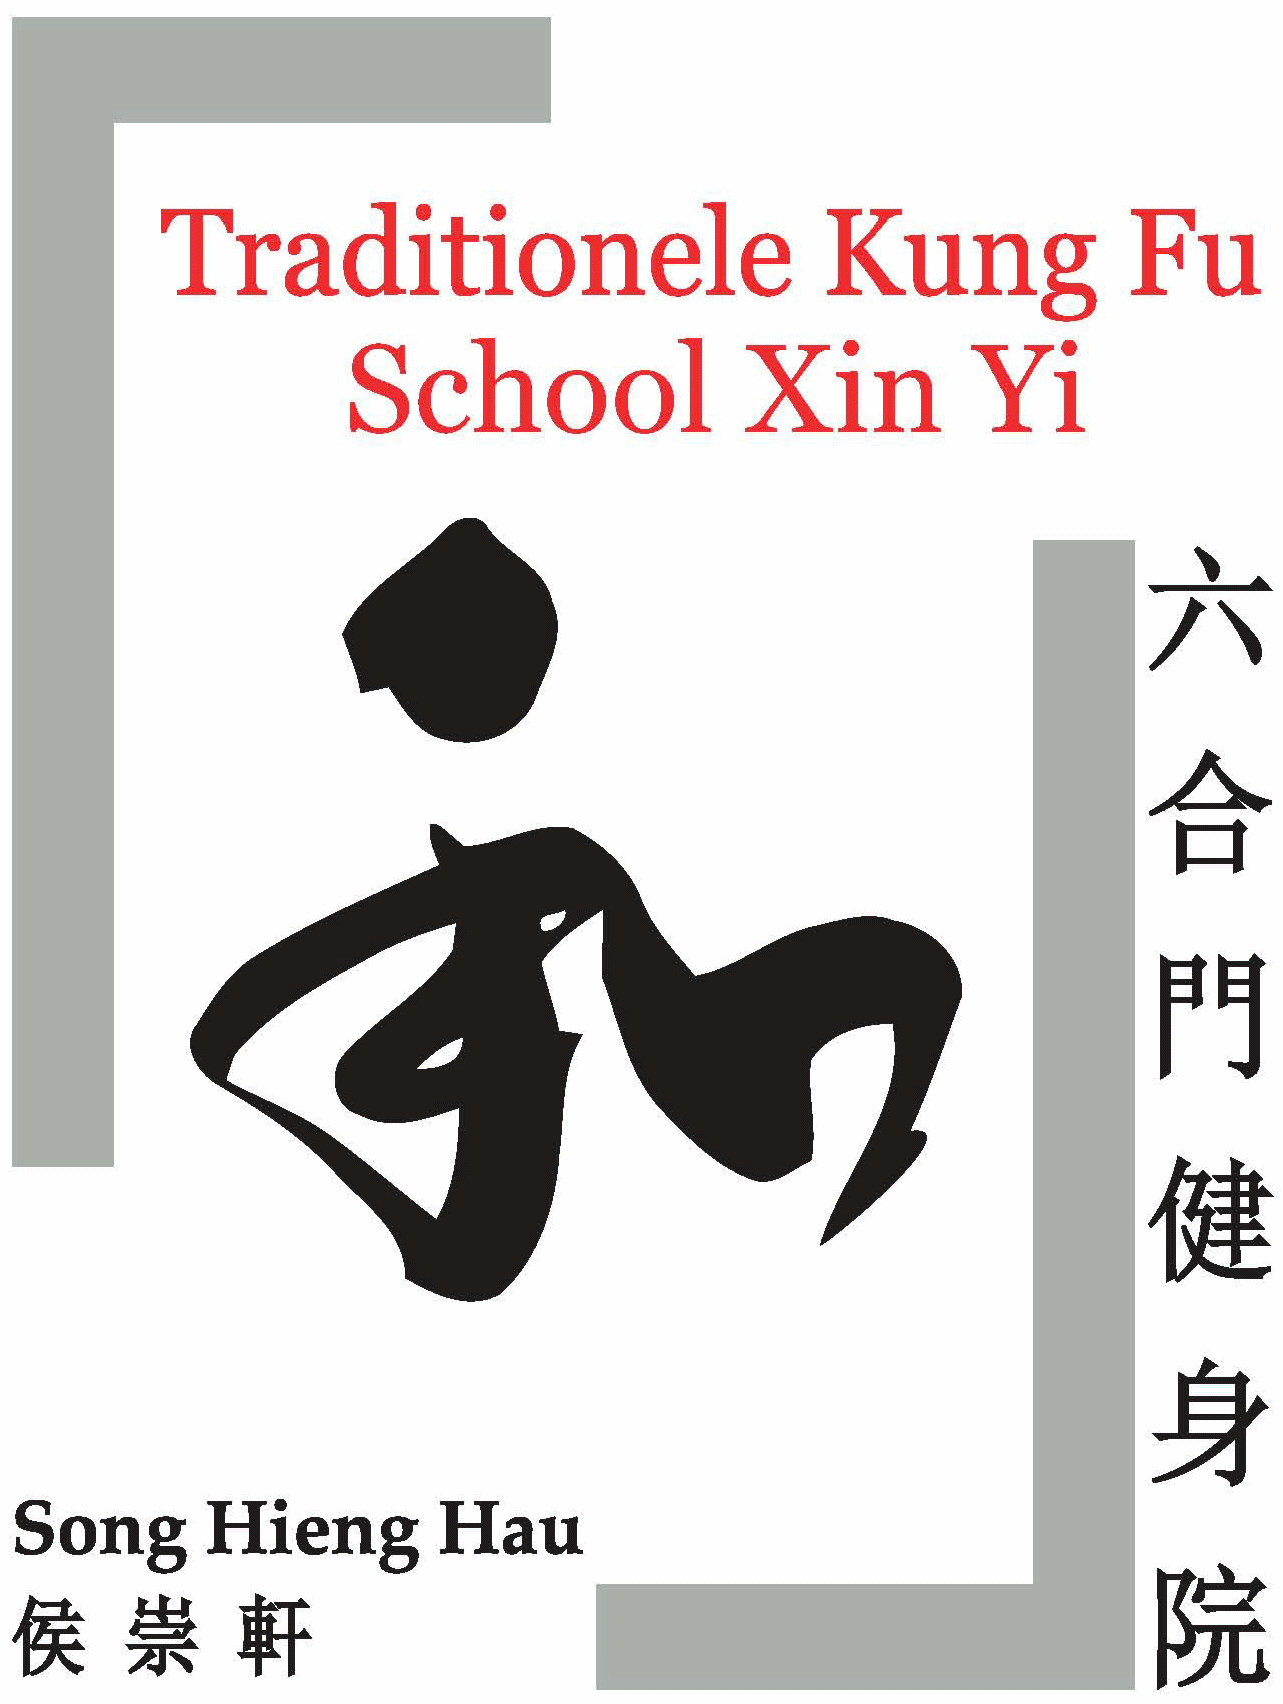 Kung Fu school Xin Yi